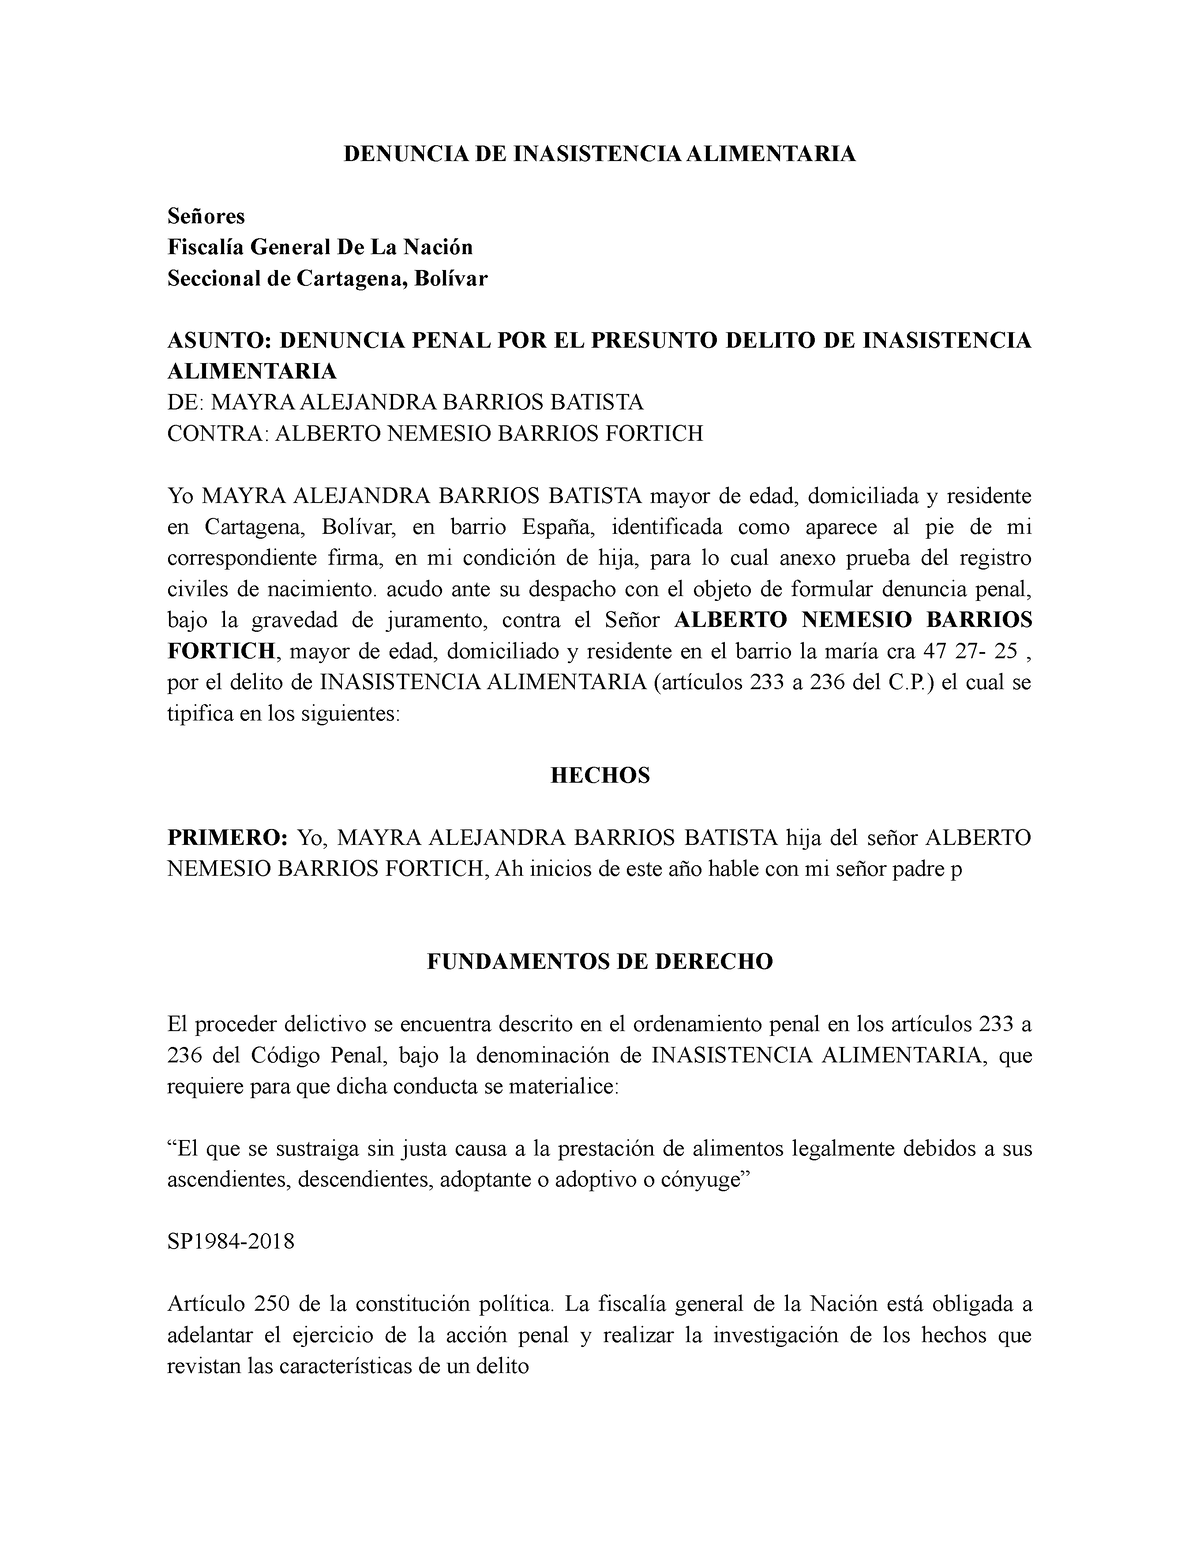 Modelo denuncia de alimentos - DENUNCIA DE INASISTENCIA ALIMENTARIA Señores  Fiscalía General De La - Studocu